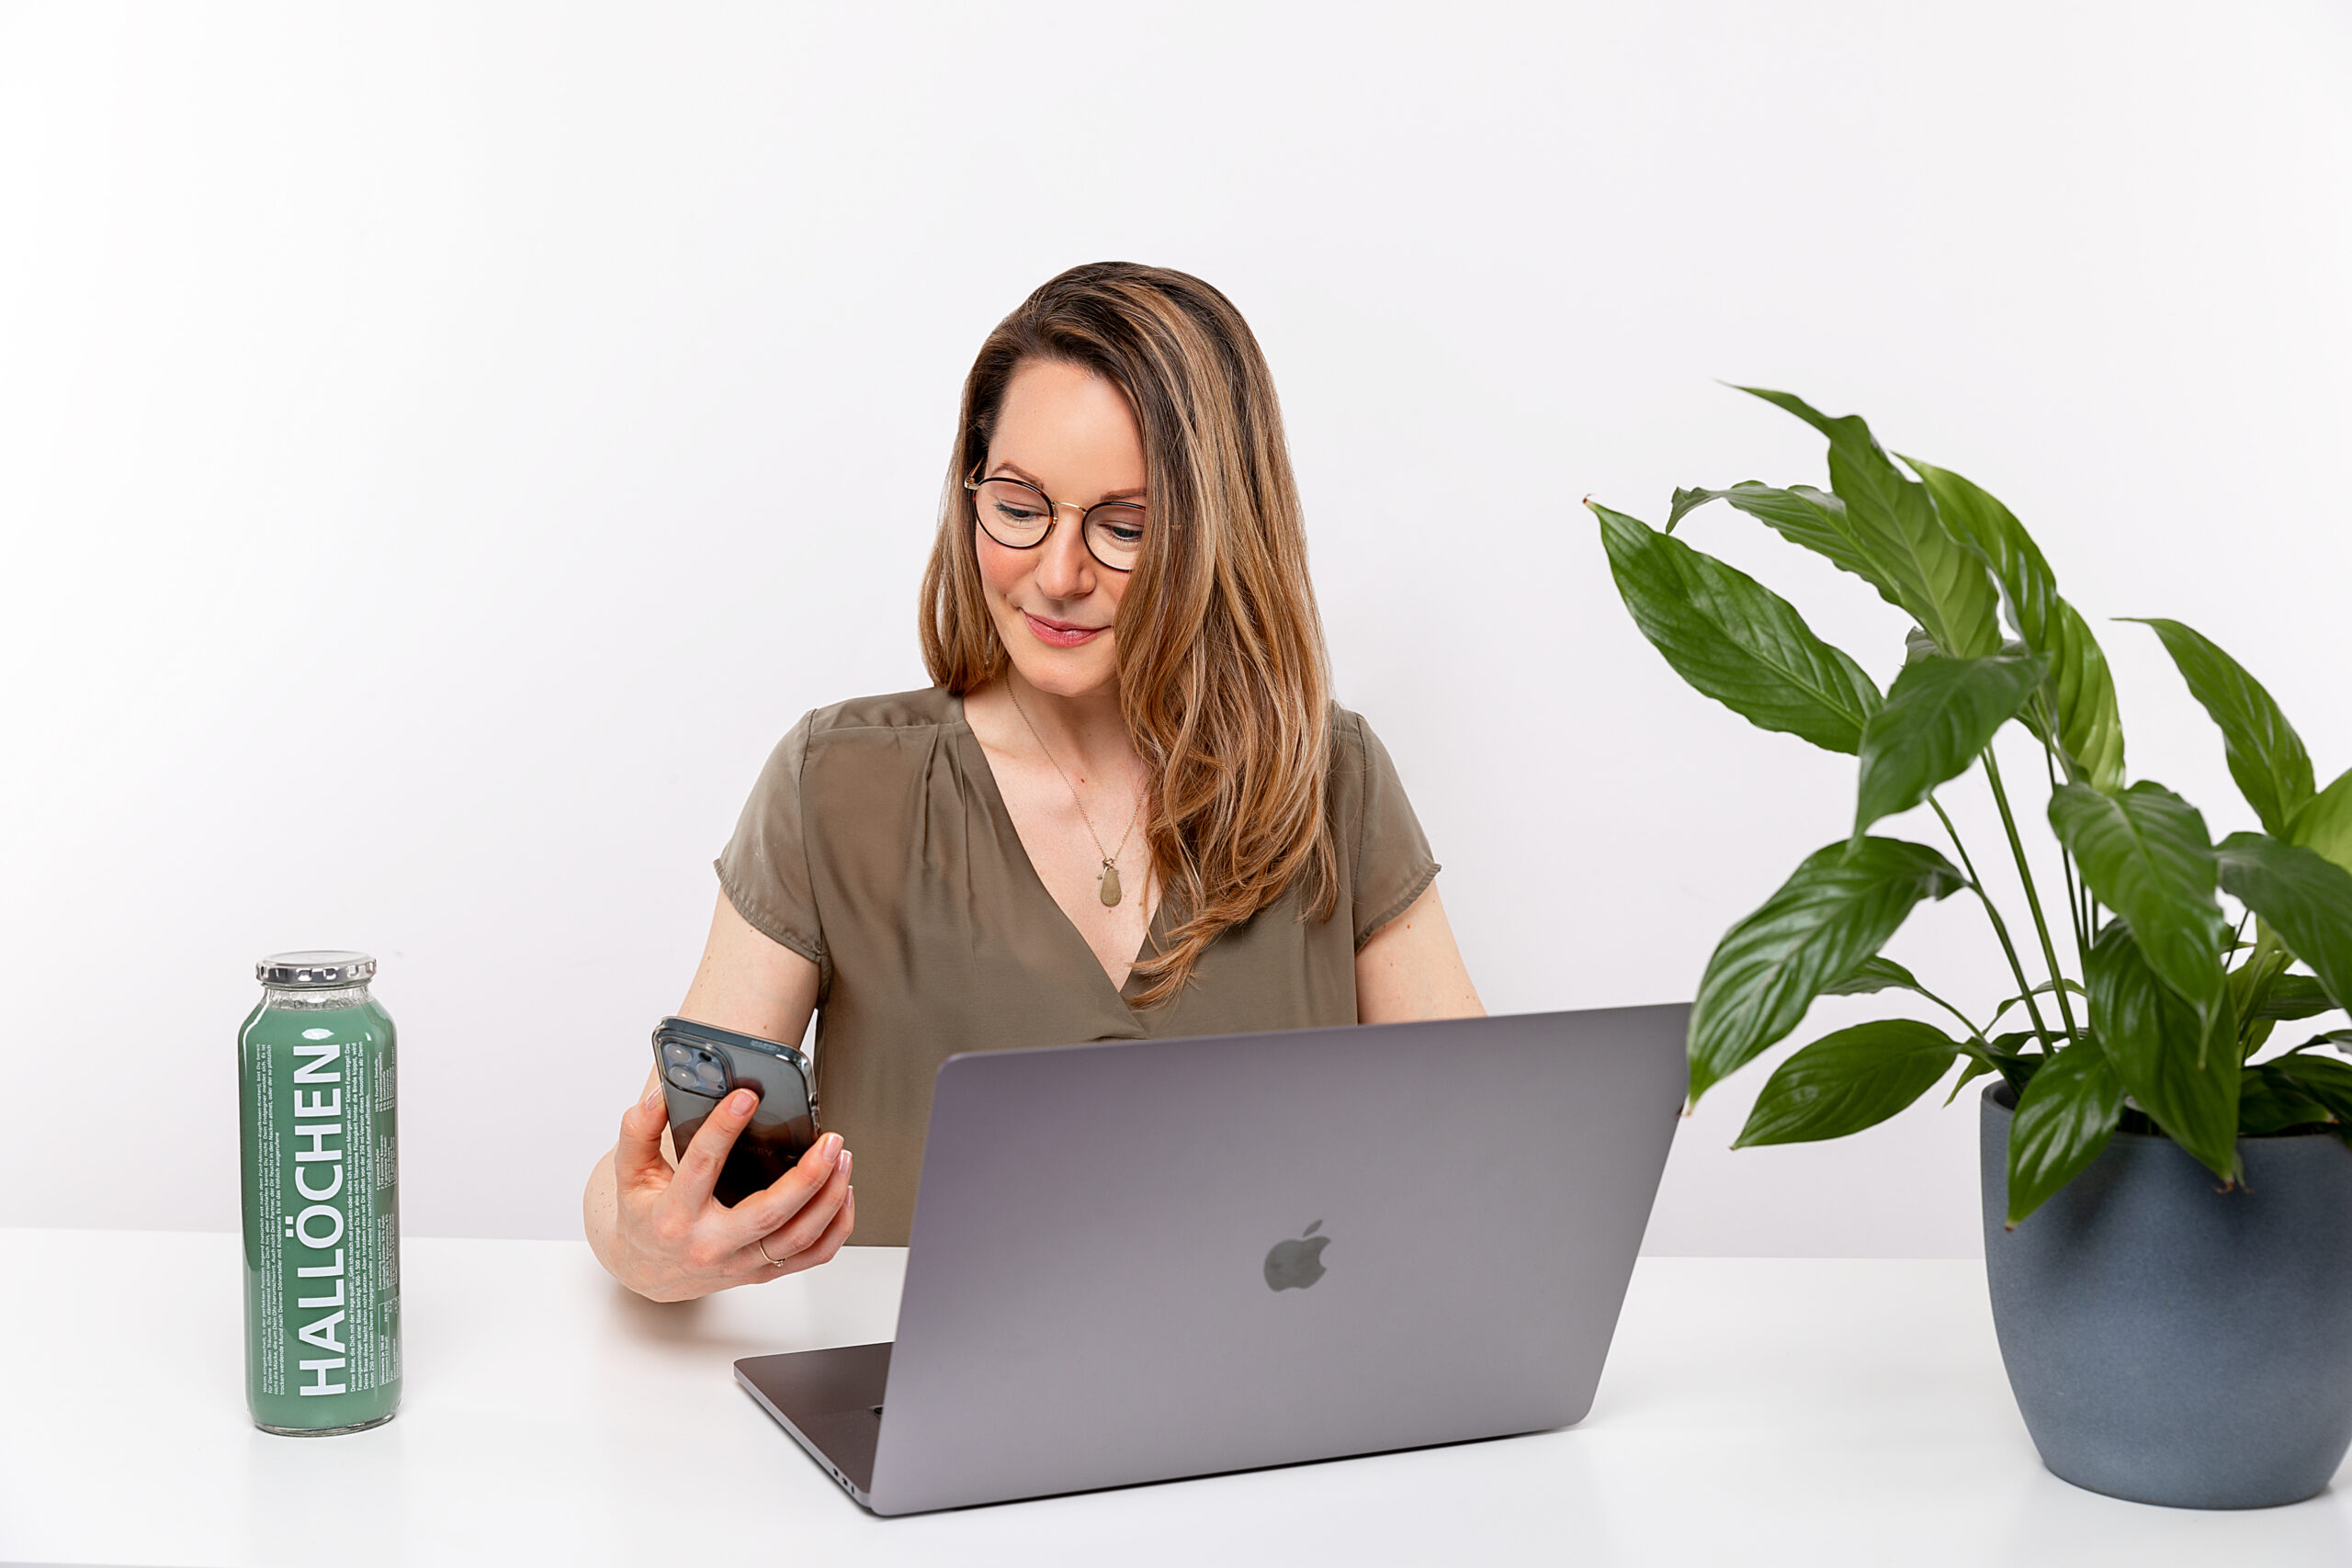 Vorstellung von Christiane Dölz. Frau sitzt am Tisch mit Laptop vor ihr, einer Pflanze rechts von ihr. Links von ihr steht eine Glasflasche mit dem Aufdruck Hallöchen. Die Frau hält ein Handy in der Hand, auf das sie gerade schaut.